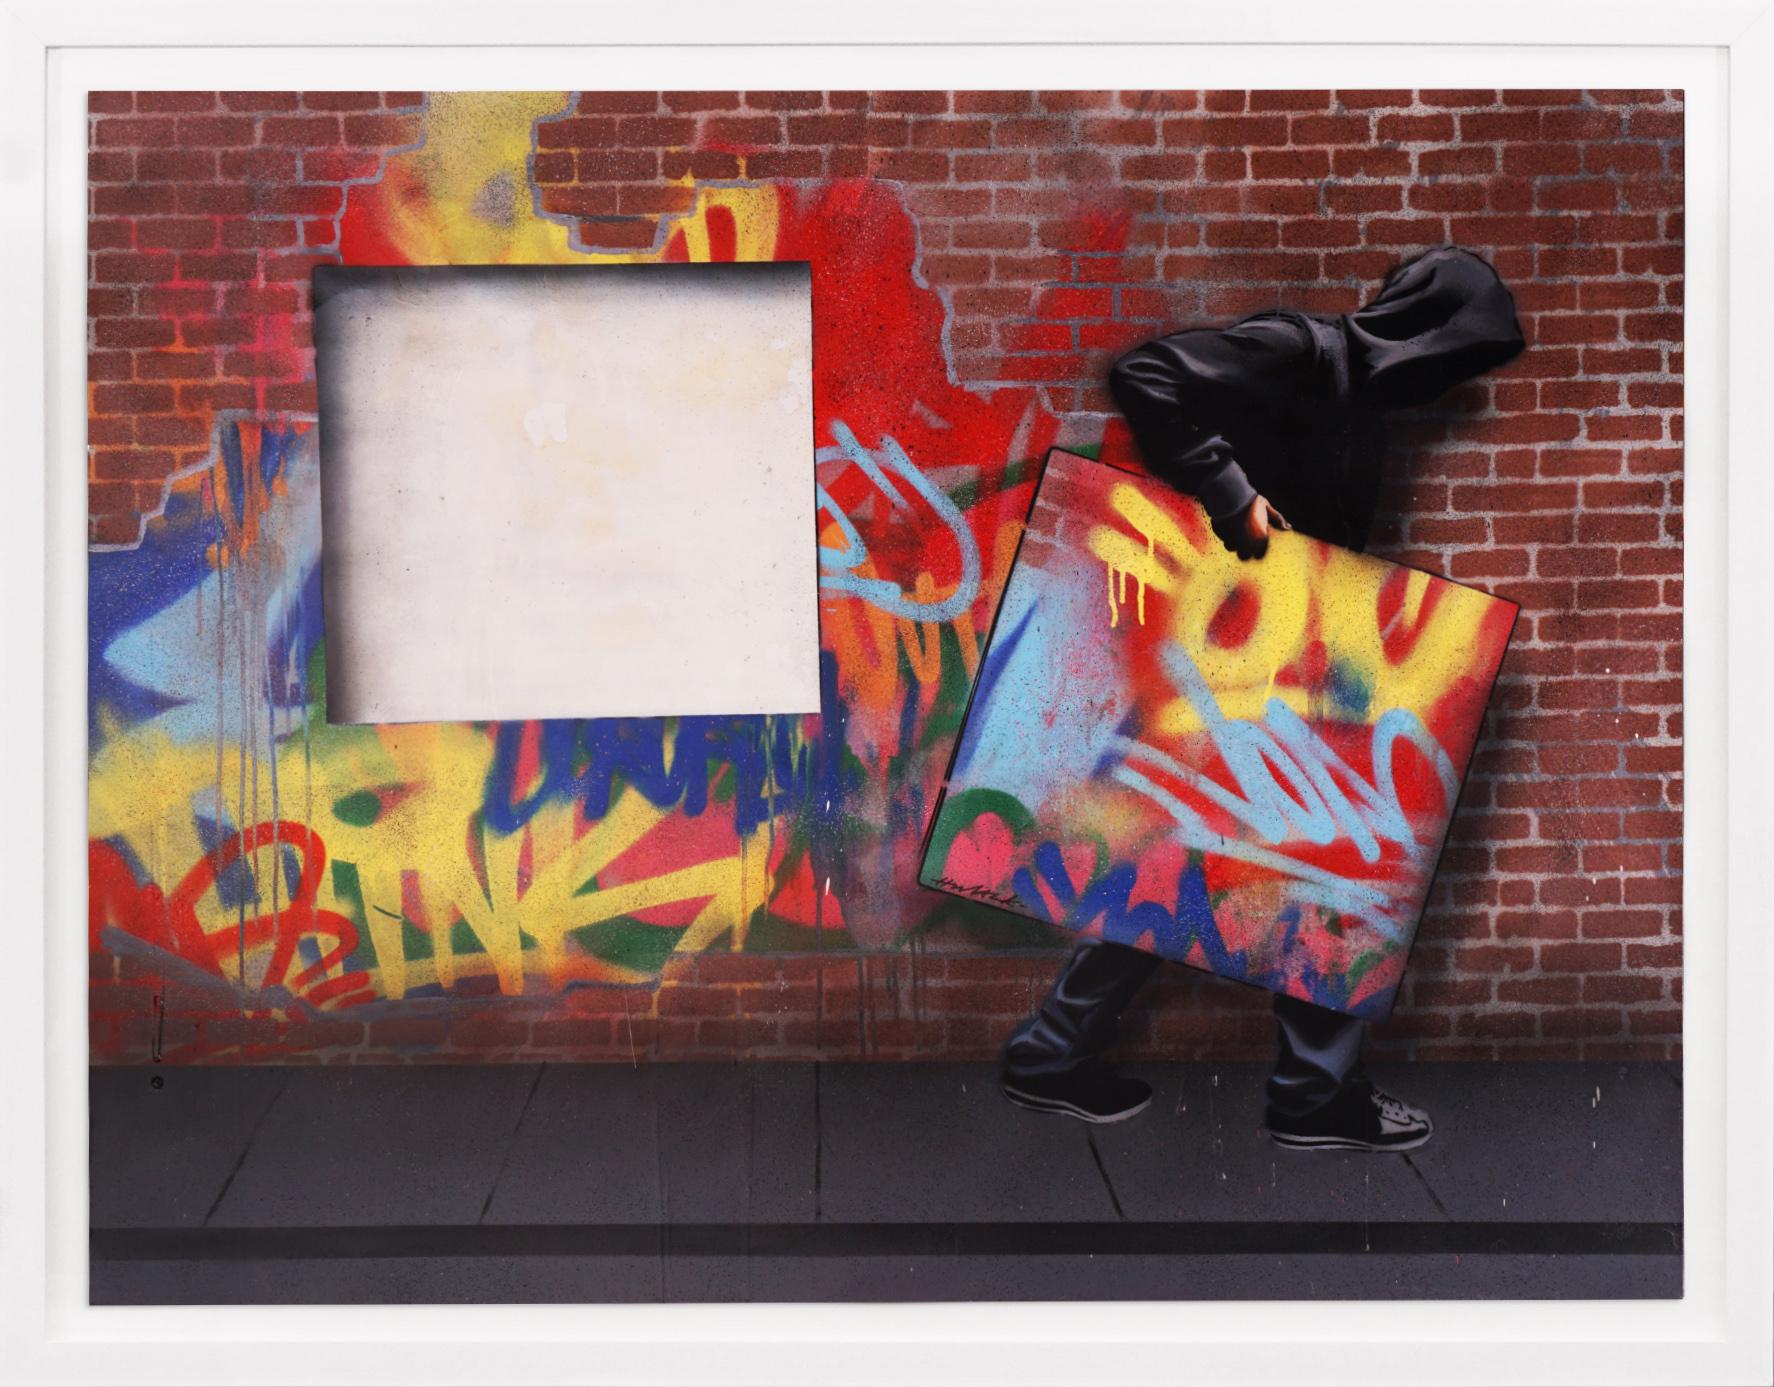 Hijack, 'Steal It' Unique Graffiti Street Pop Art Painting, 2021 9